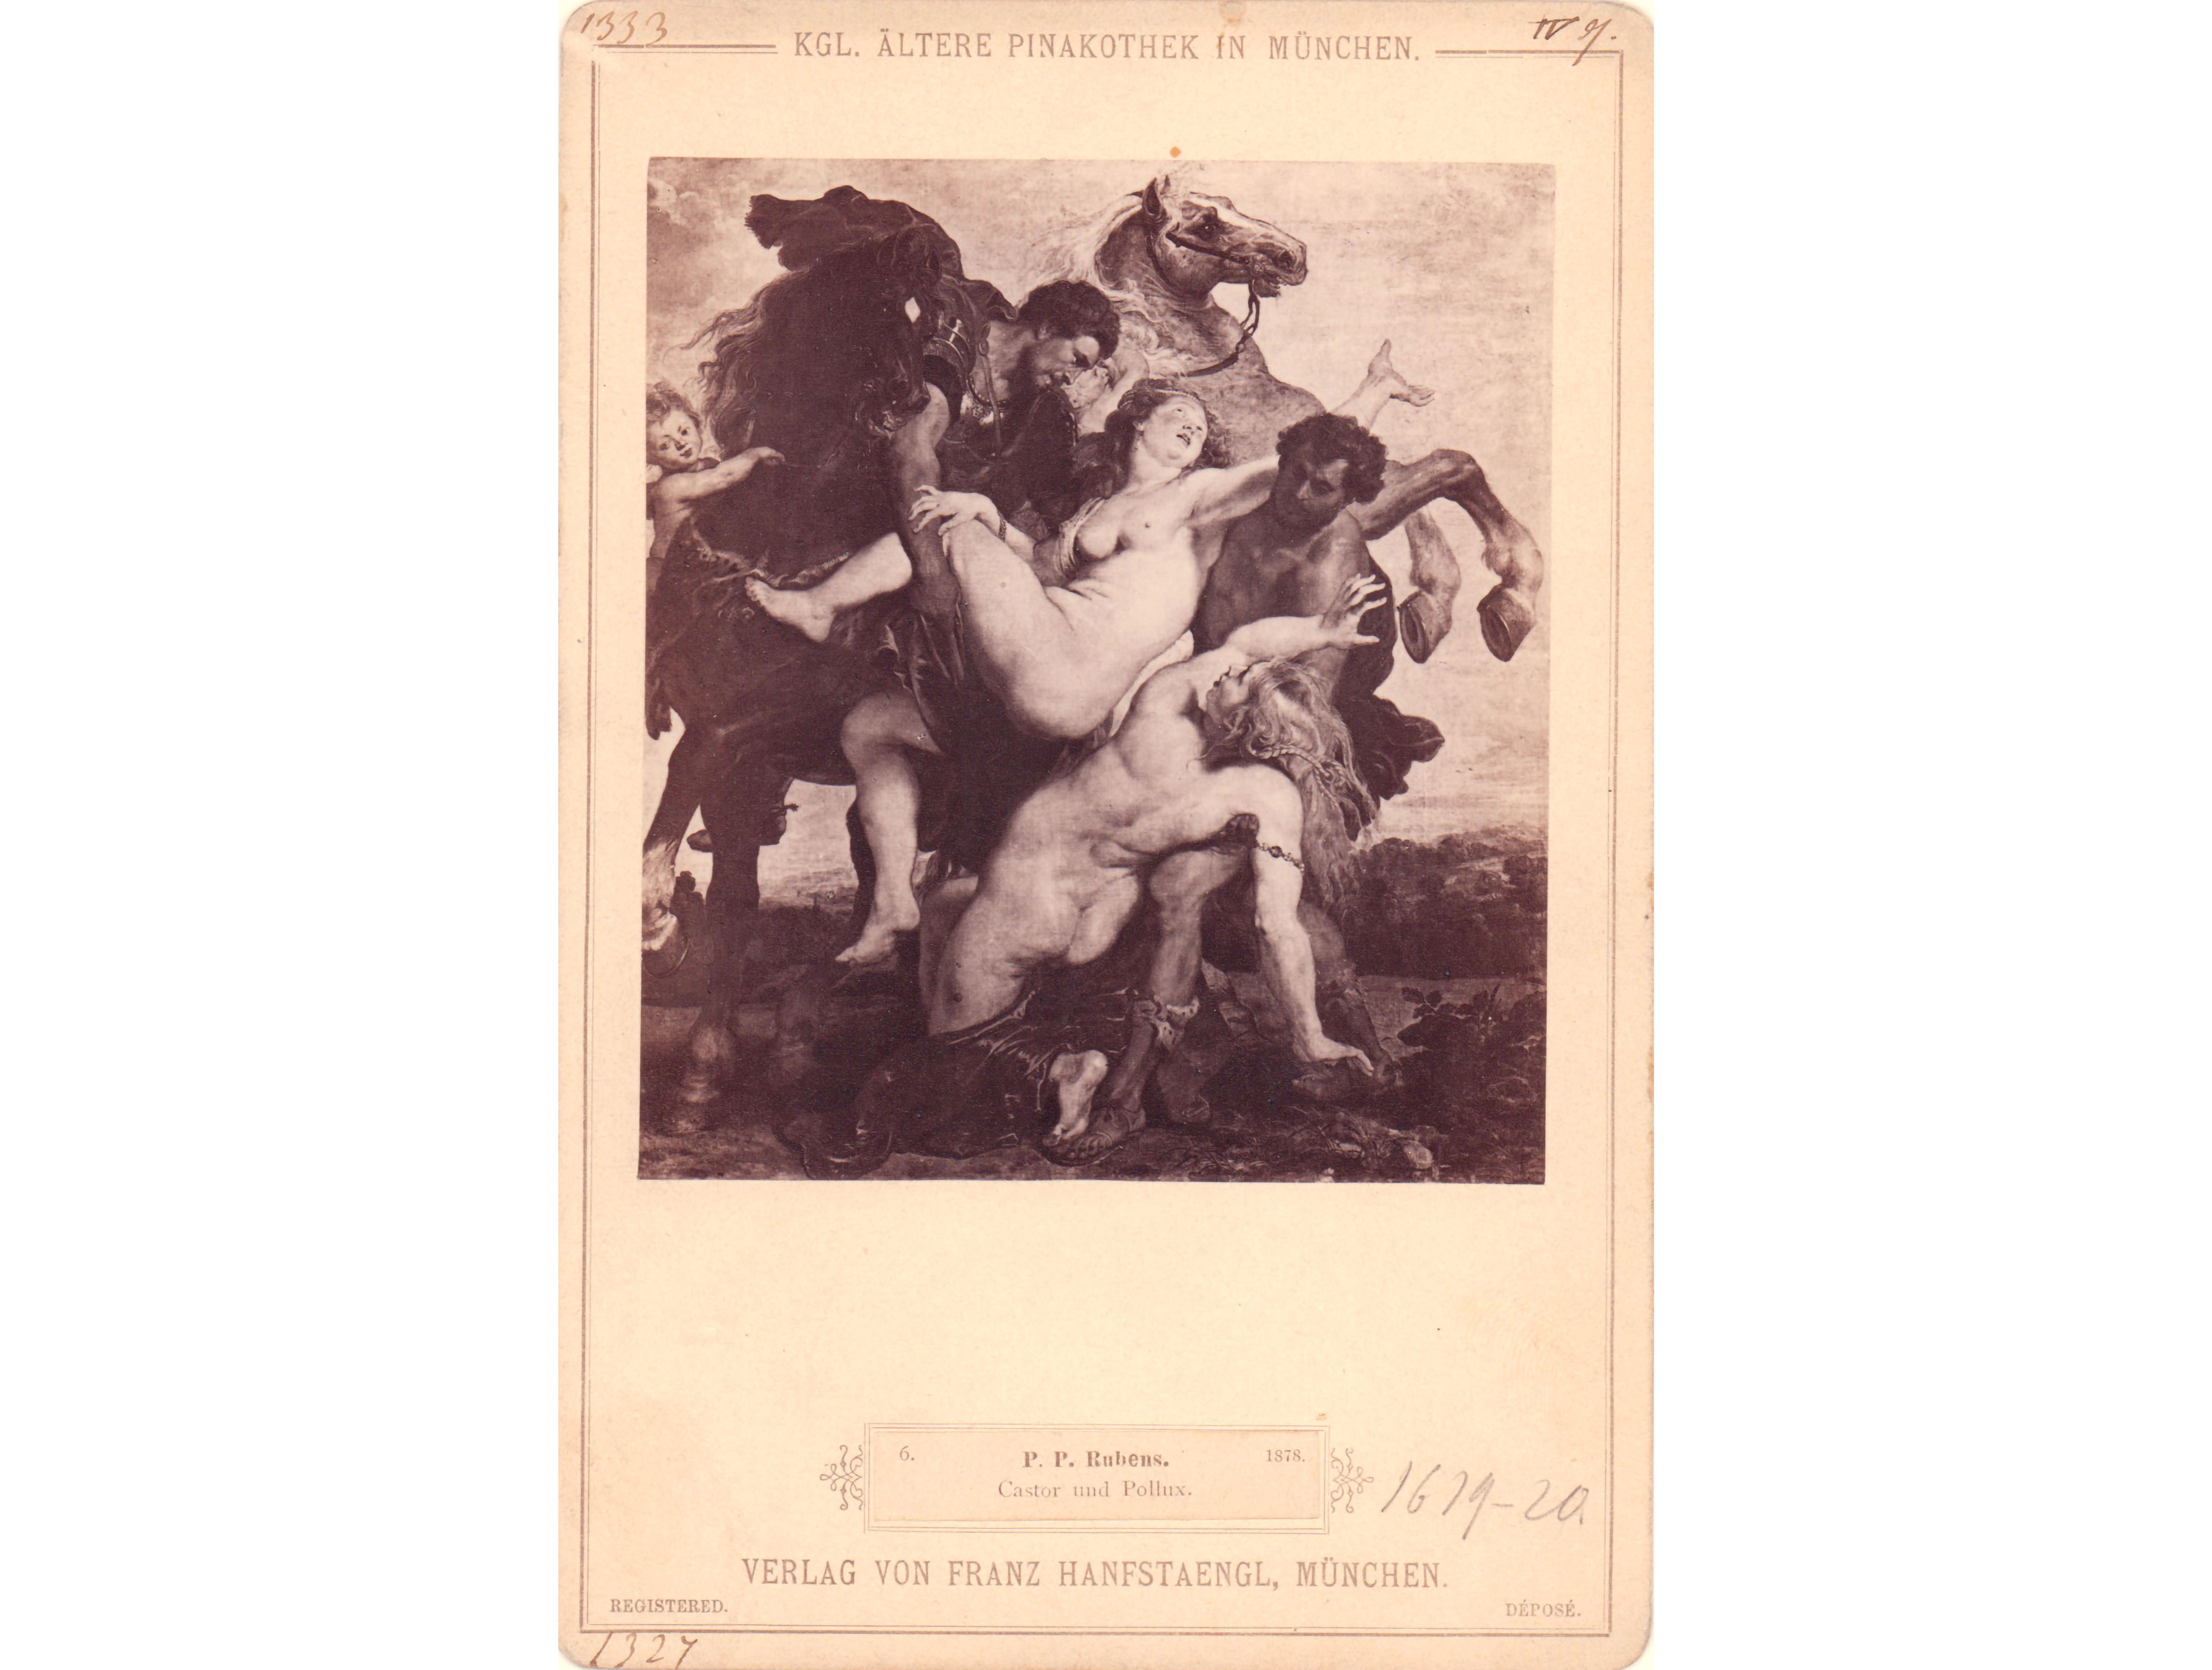 Fotografie (Albuminabzug auf Karton, Kabinettkarte), Rubens, Castor und Pollux, Verlag von Franz Hanfstaengl, Inv.-Nr. 1333, 17 x 11 cm